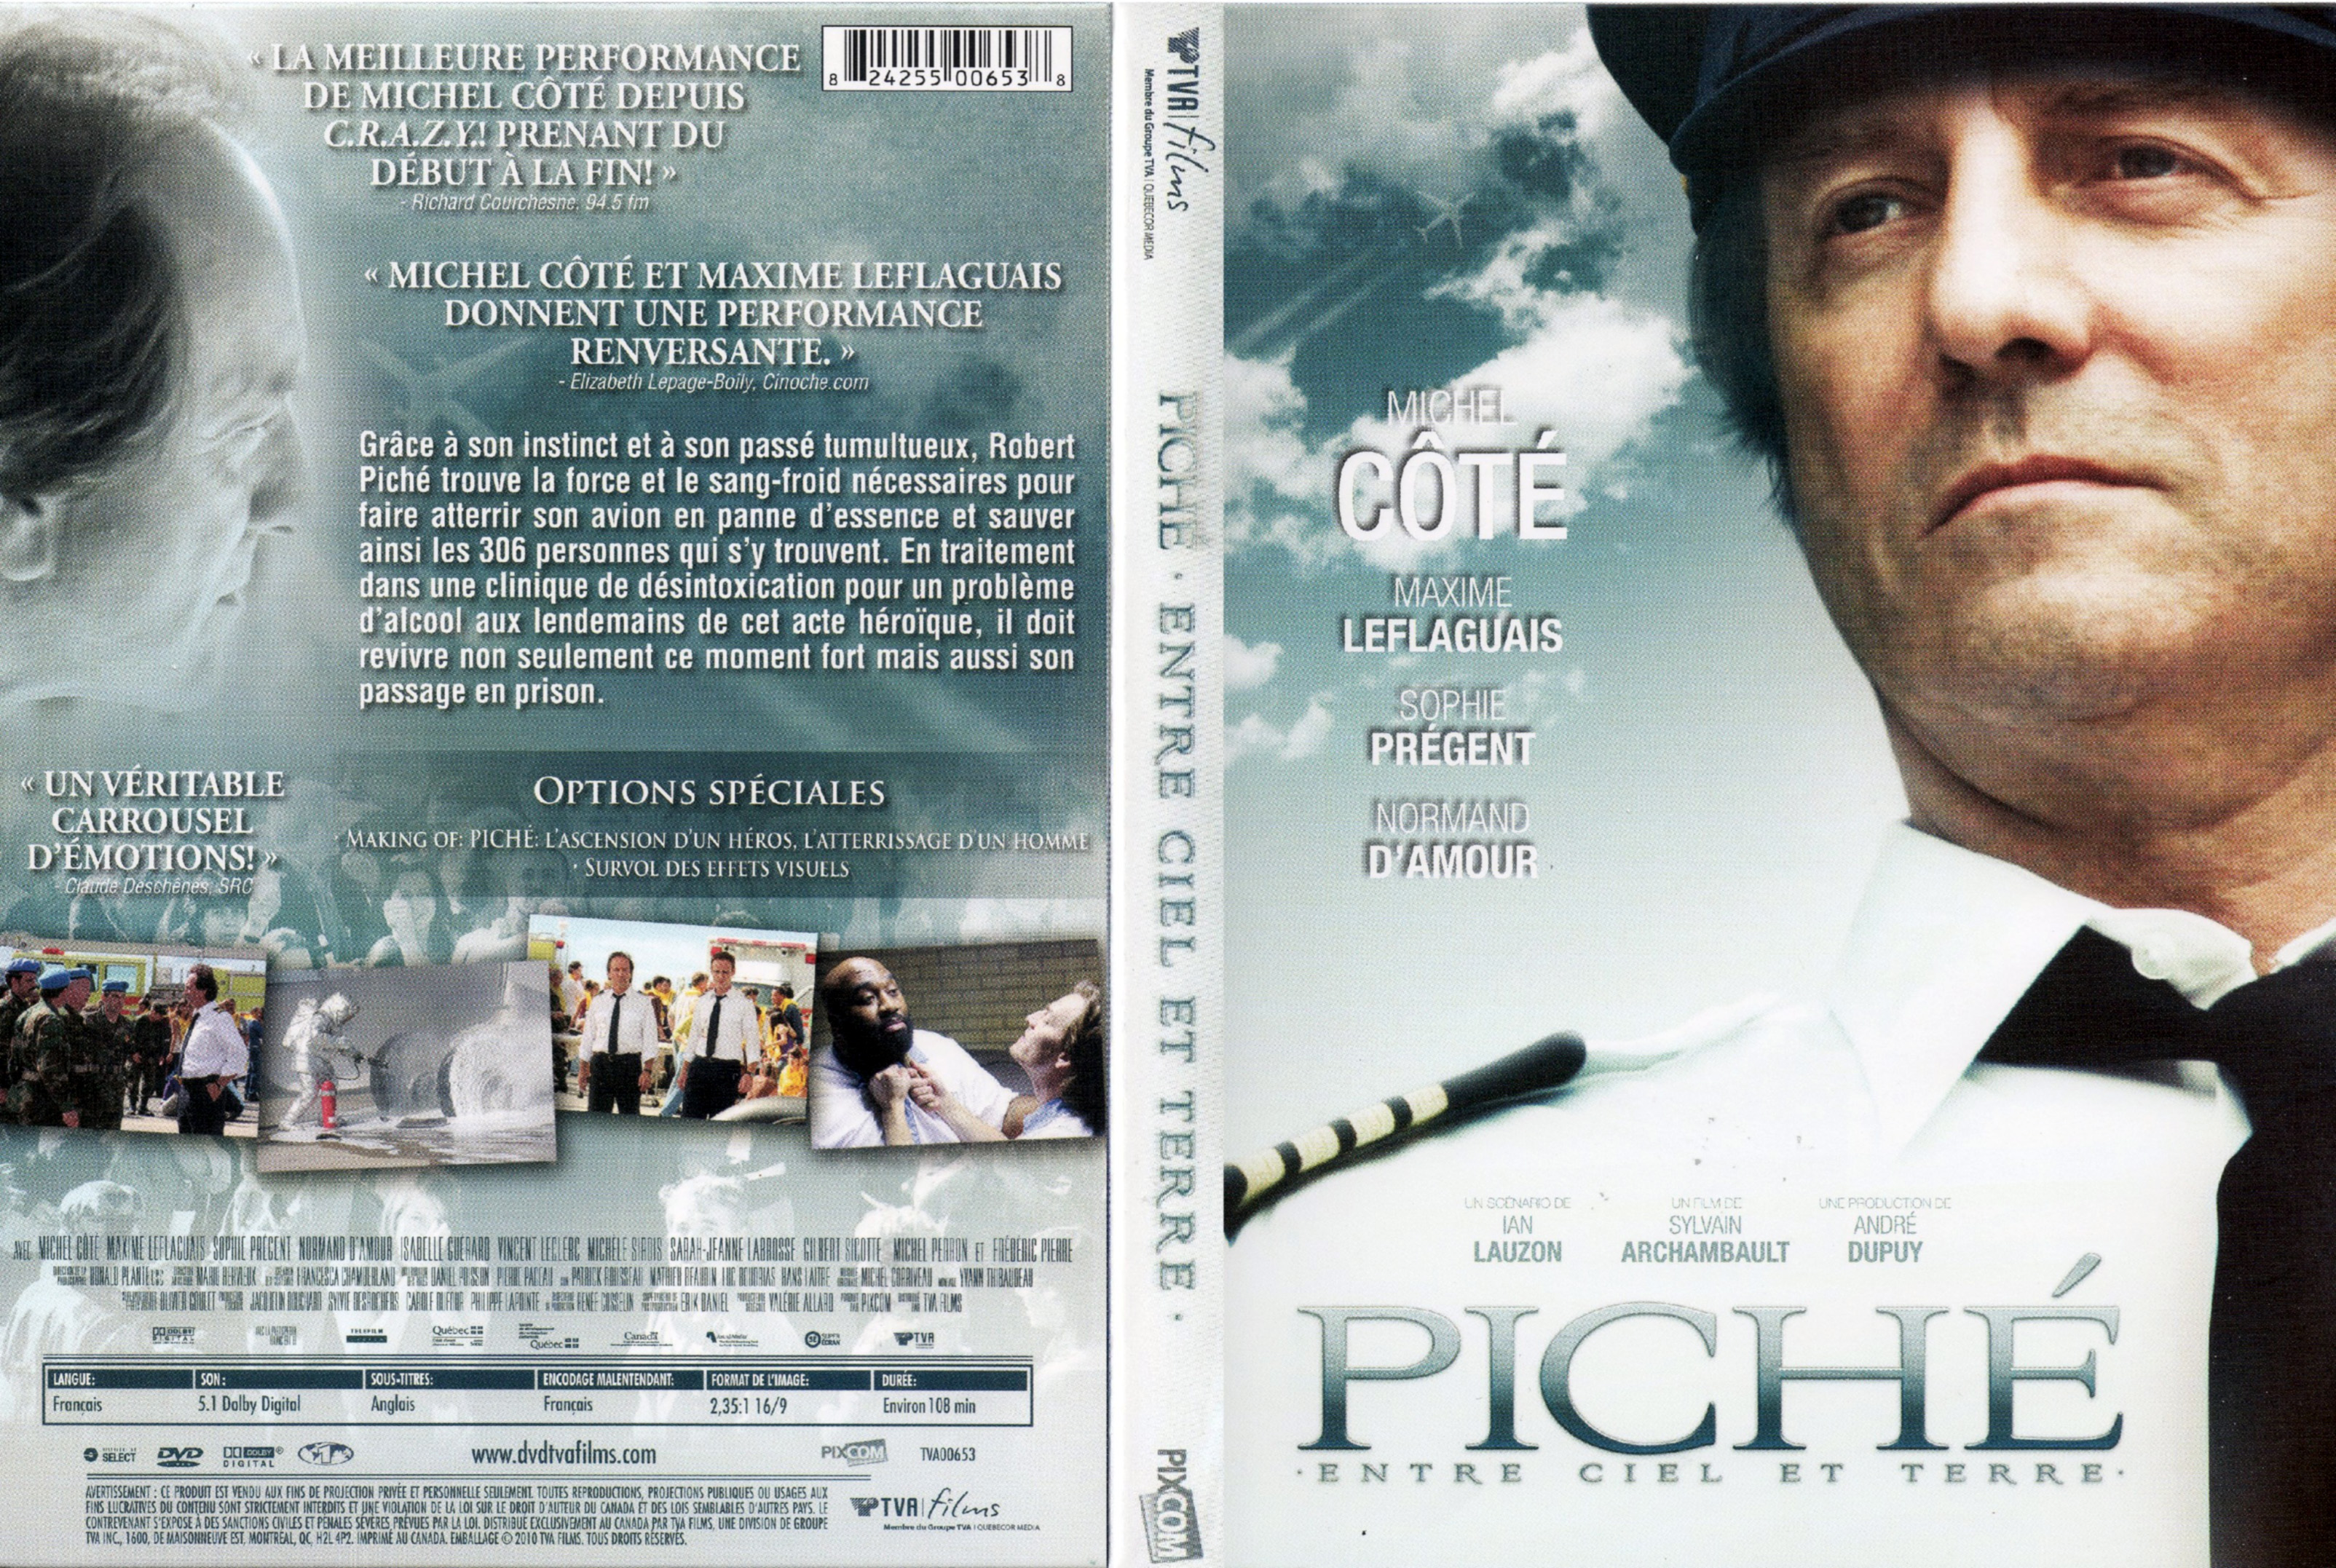 Jaquette DVD Pich entre ciel et terre (Canadienne)